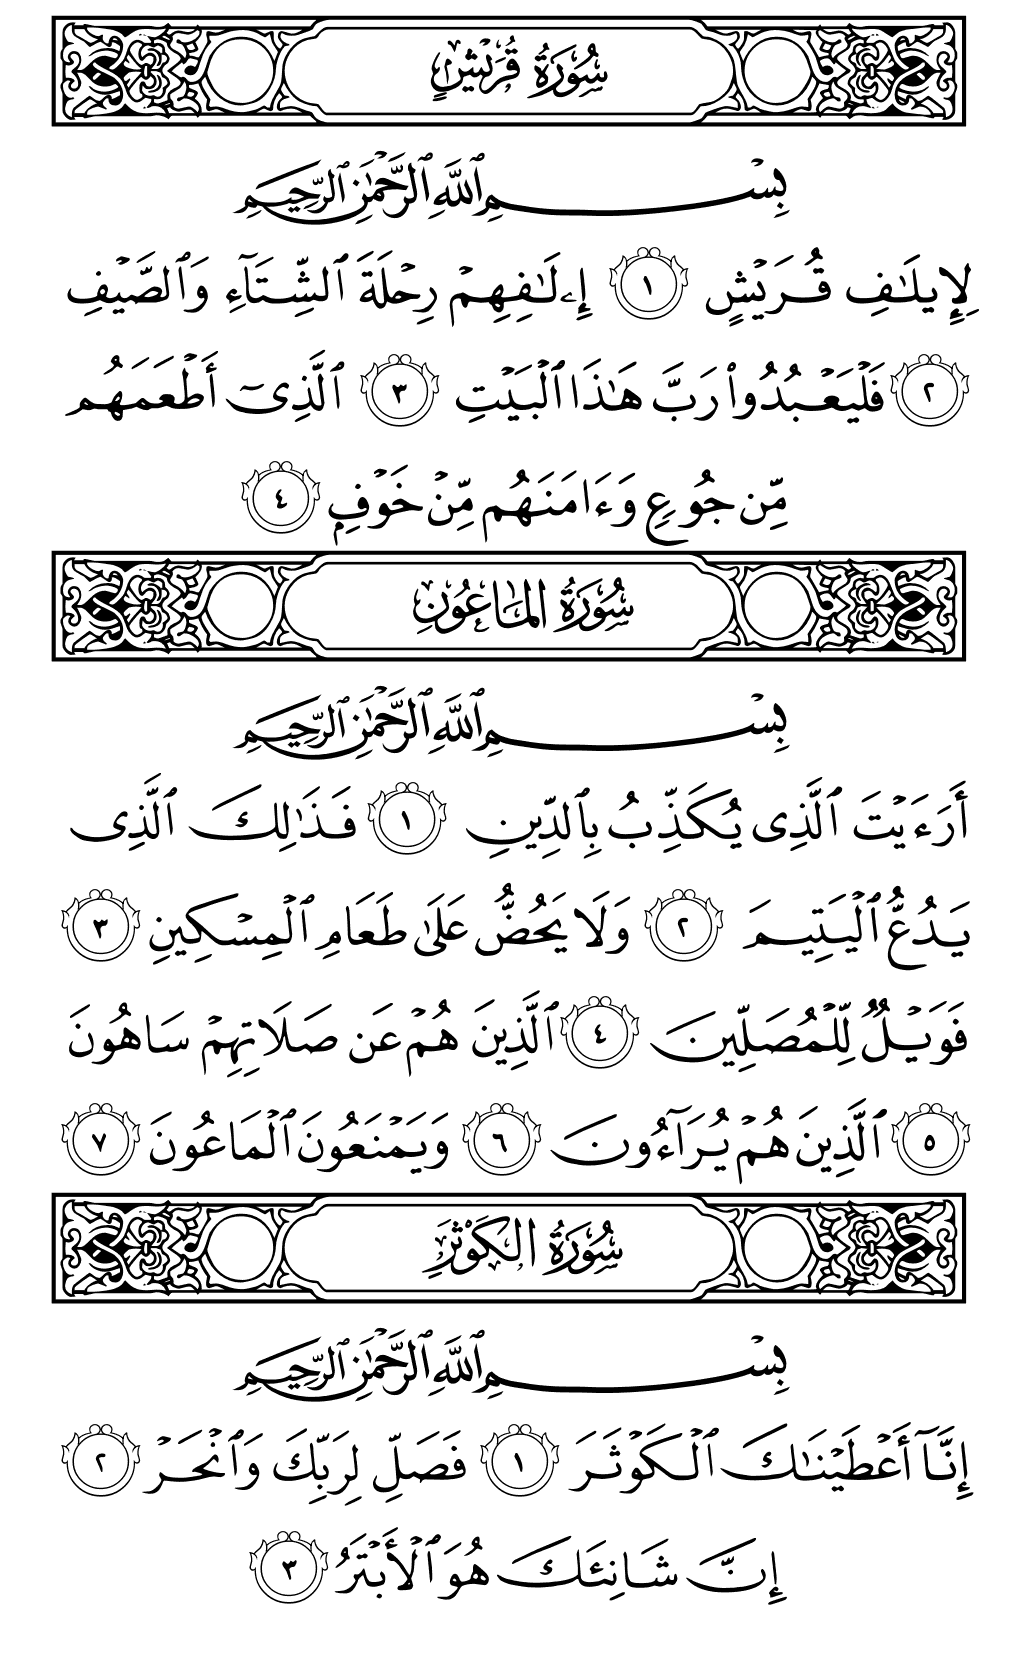 الصفحة رقم 602 من القرآن الكريم